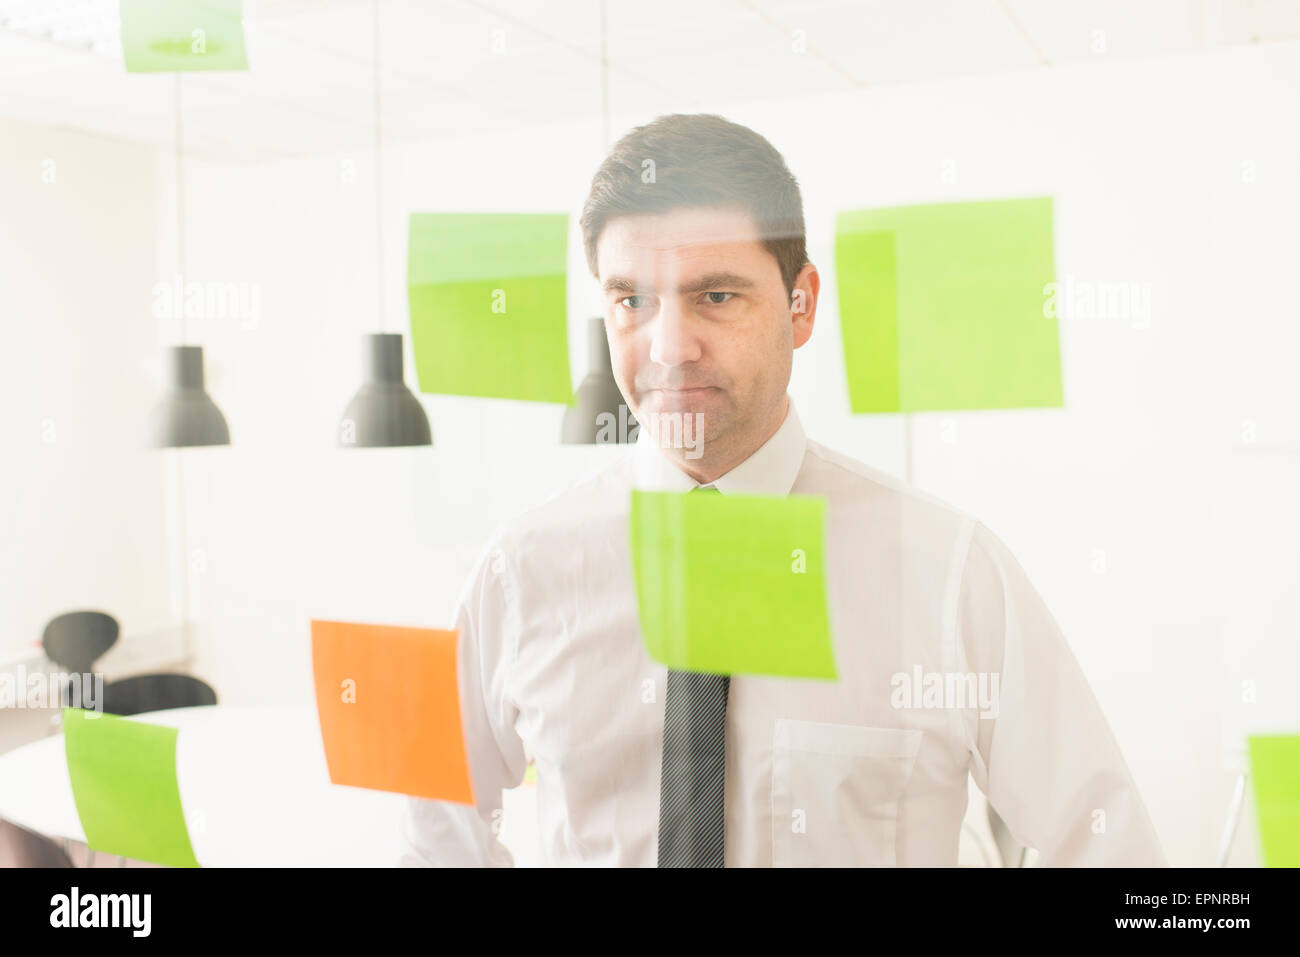 Geschäftsmann Glaswand mit Klebstoff Notizen zu betrachten. Konzeptbild von Business-Planung und Strategie. Stockfoto